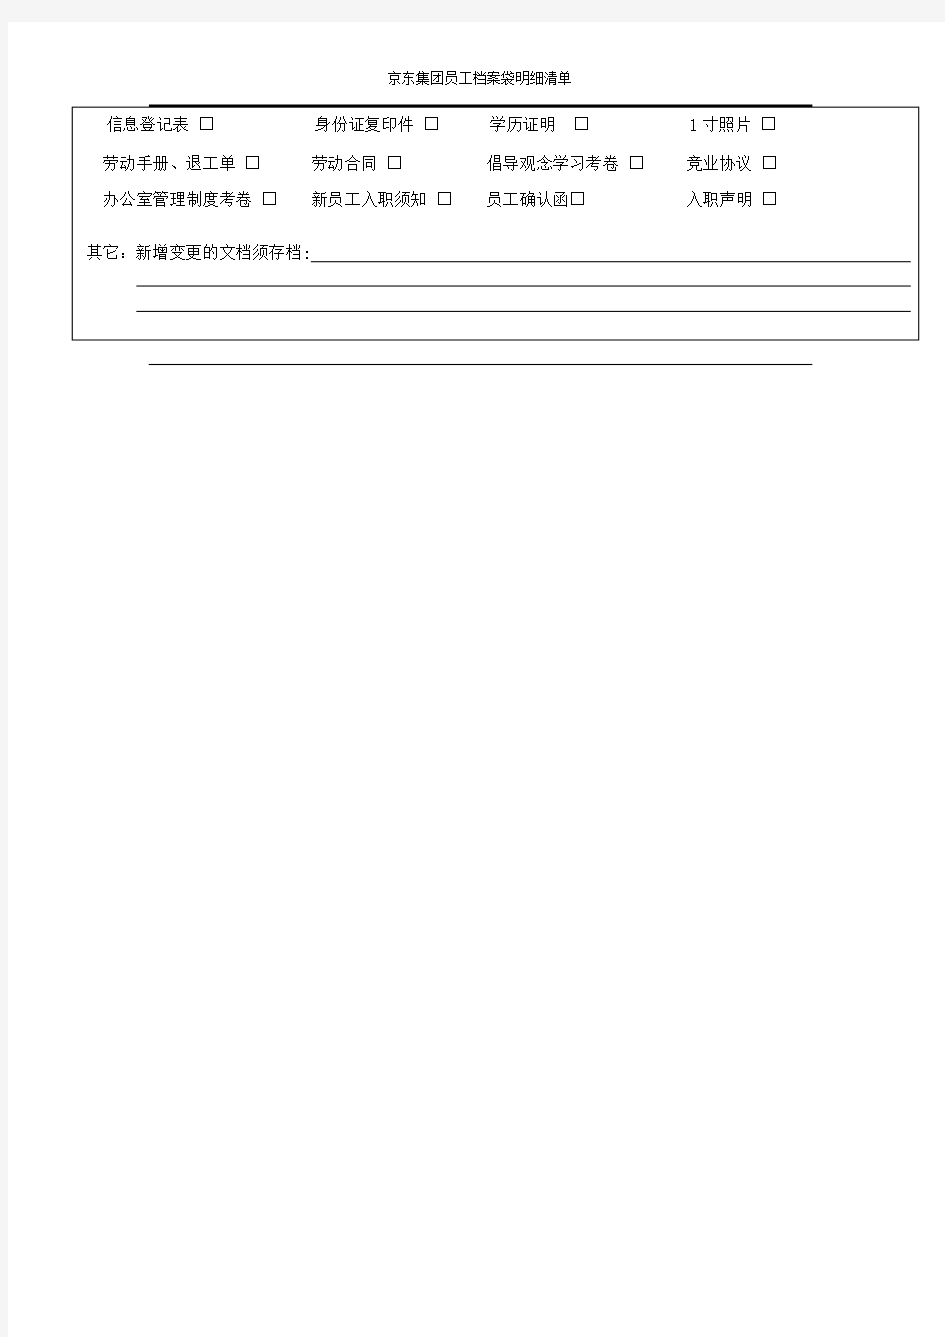 京东集团员工档案袋明细清单